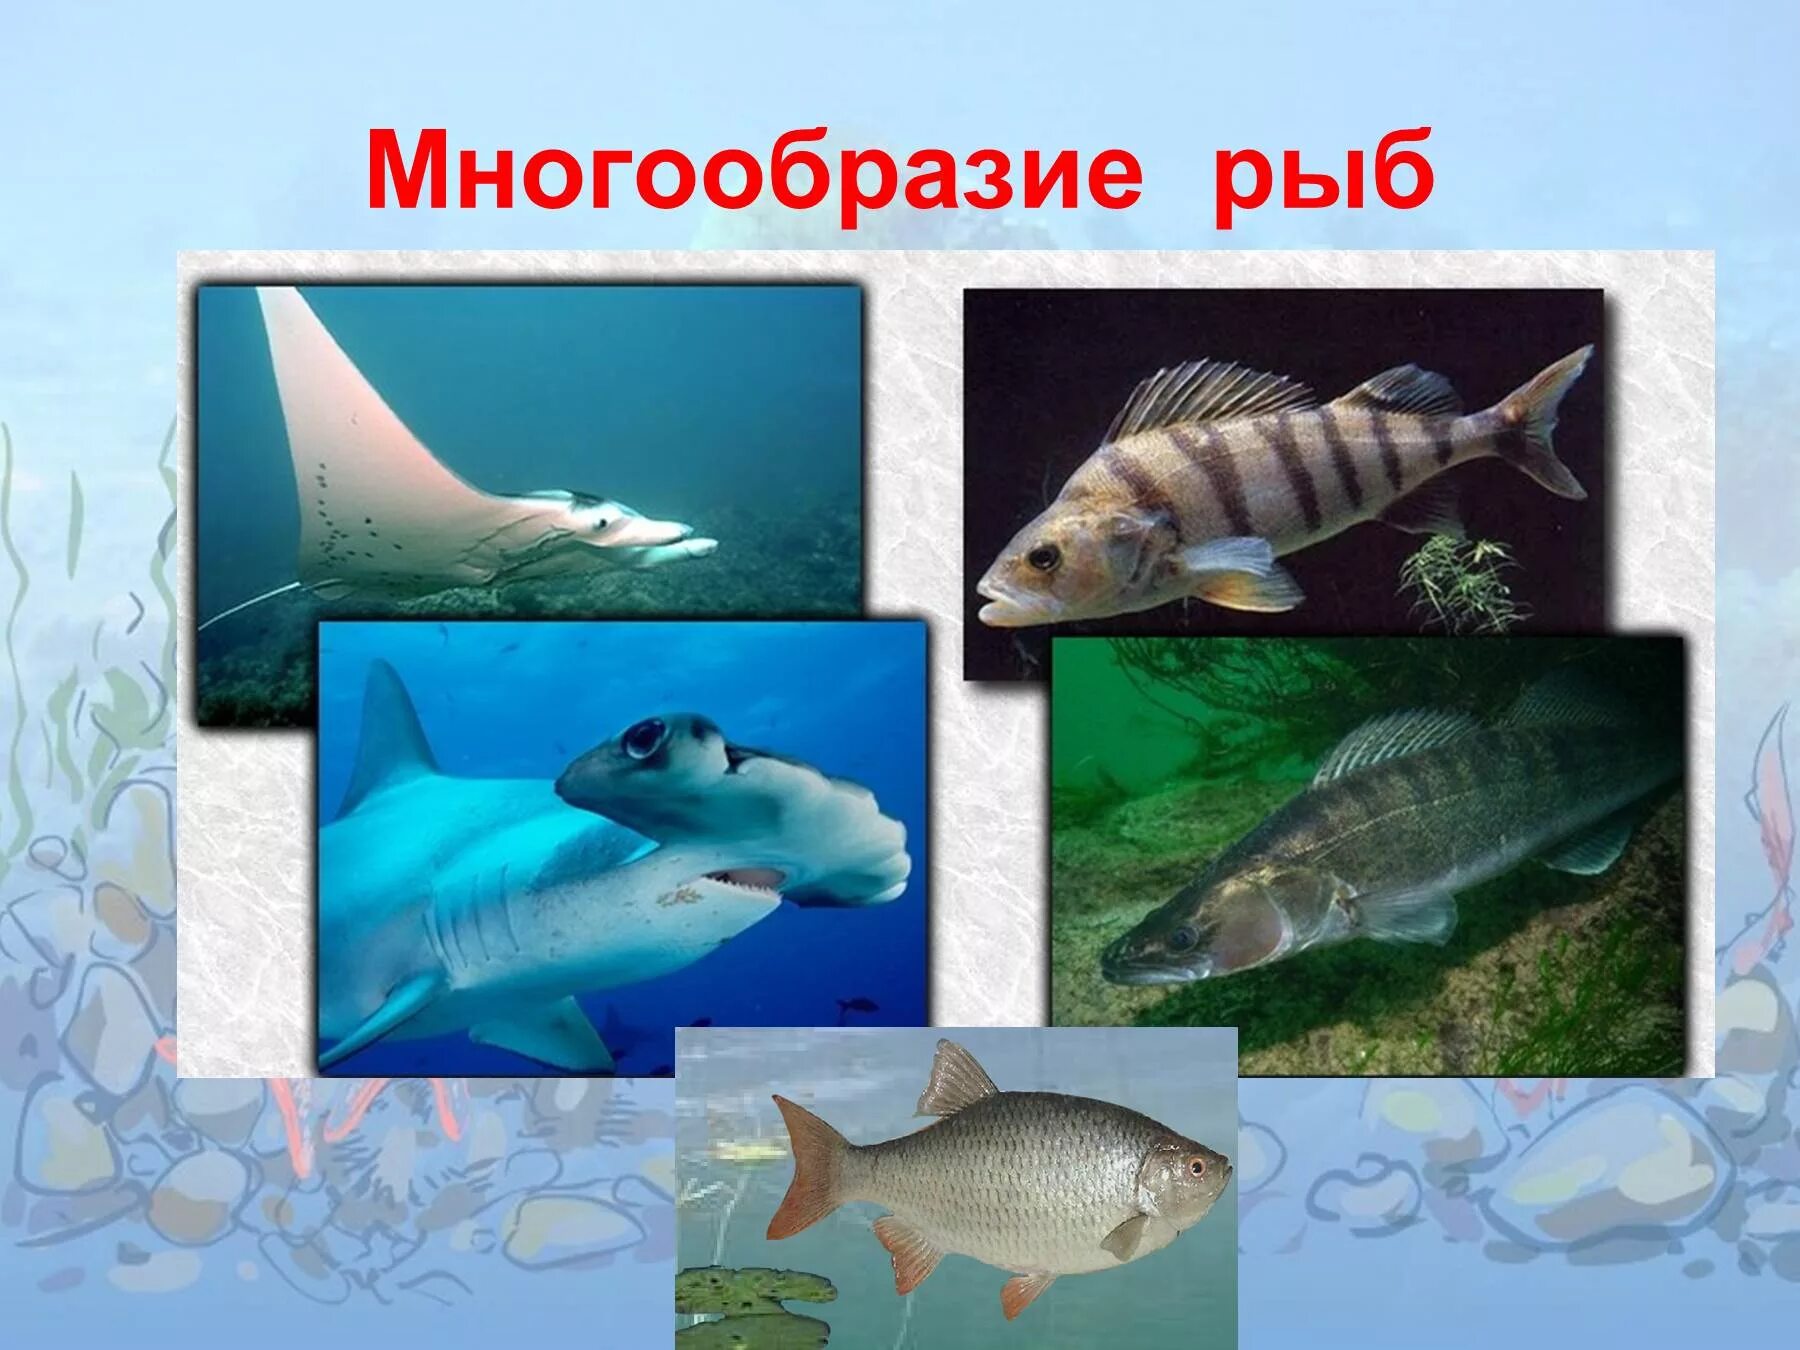 Многообразие рыб. Класс рыбы многообразие. Позвоночные животные рыбы. Разнообразие рыб 7 класс биология.